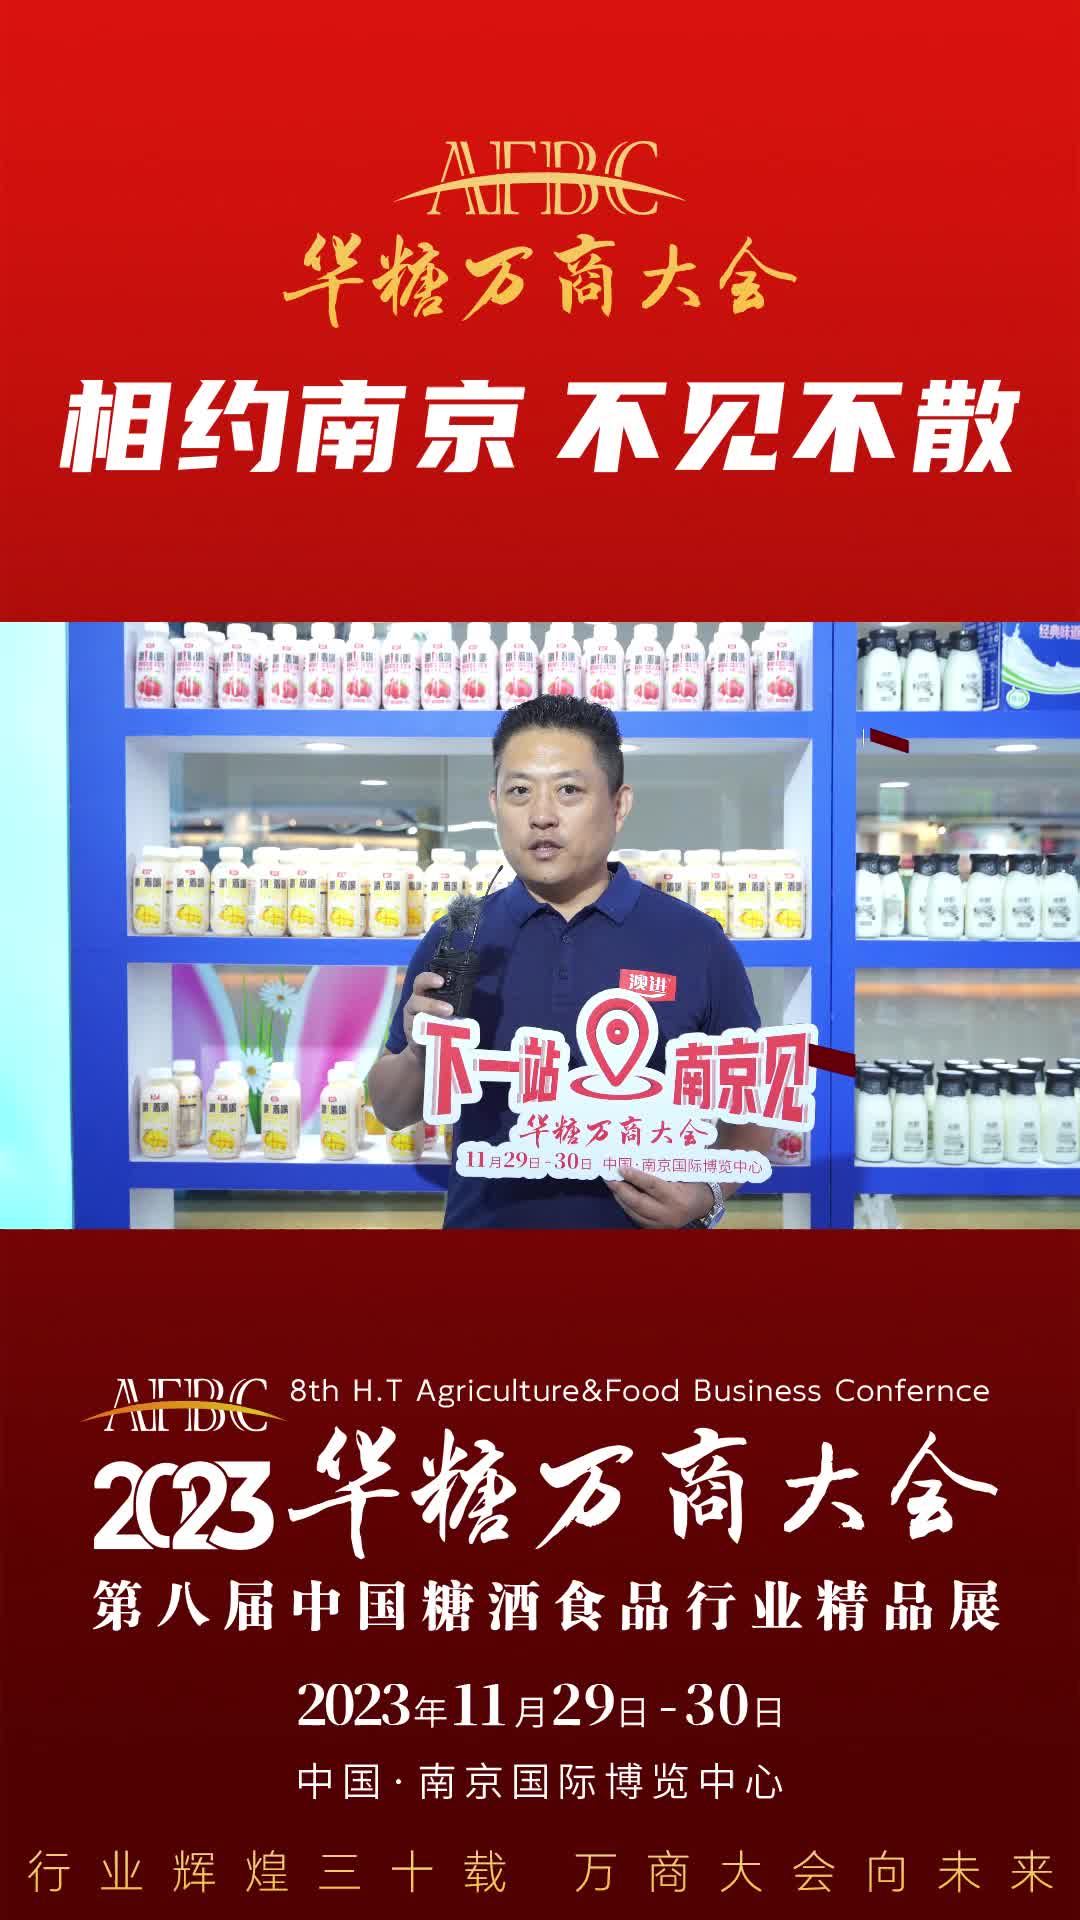 11月29日-30日中国·南京，山东澳进饮品总经理 周磊 与您相约2023华糖万商大会！